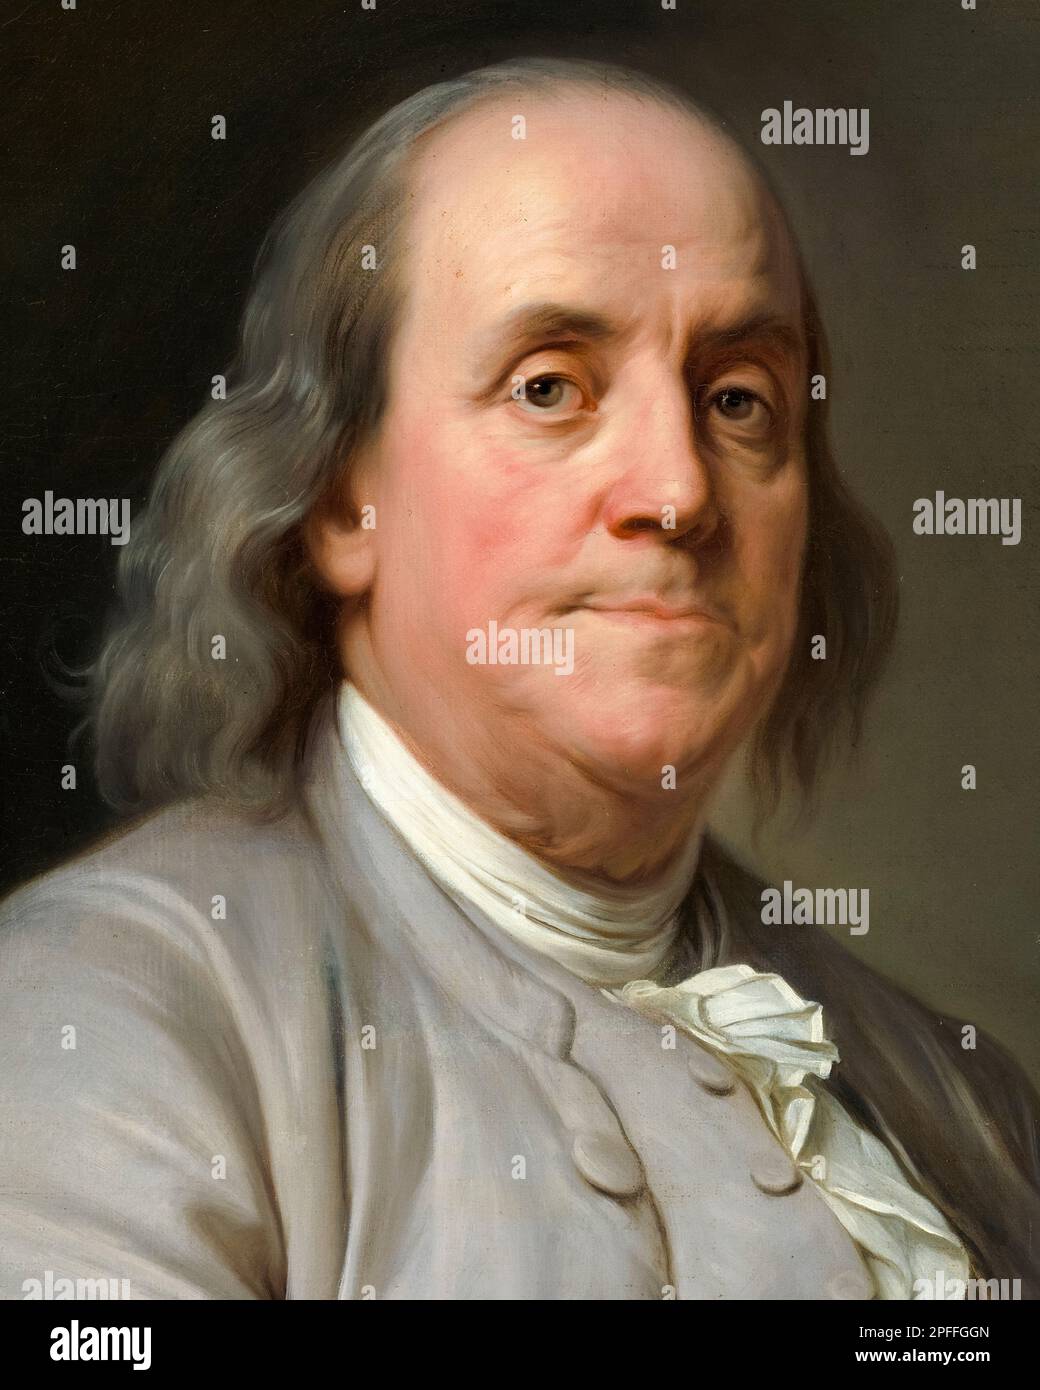 Benjamin Franklin (1706-1790), amerikanische Polymathematik, Schriftsteller, Wissenschaftler, Erfinder, Und Staatsmann. Einer der Gründerväter der Vereinigten Staaten, Porträt in Öl auf Leinwand von Joseph Siffred Duplessis, ca. 1785 Stockfoto